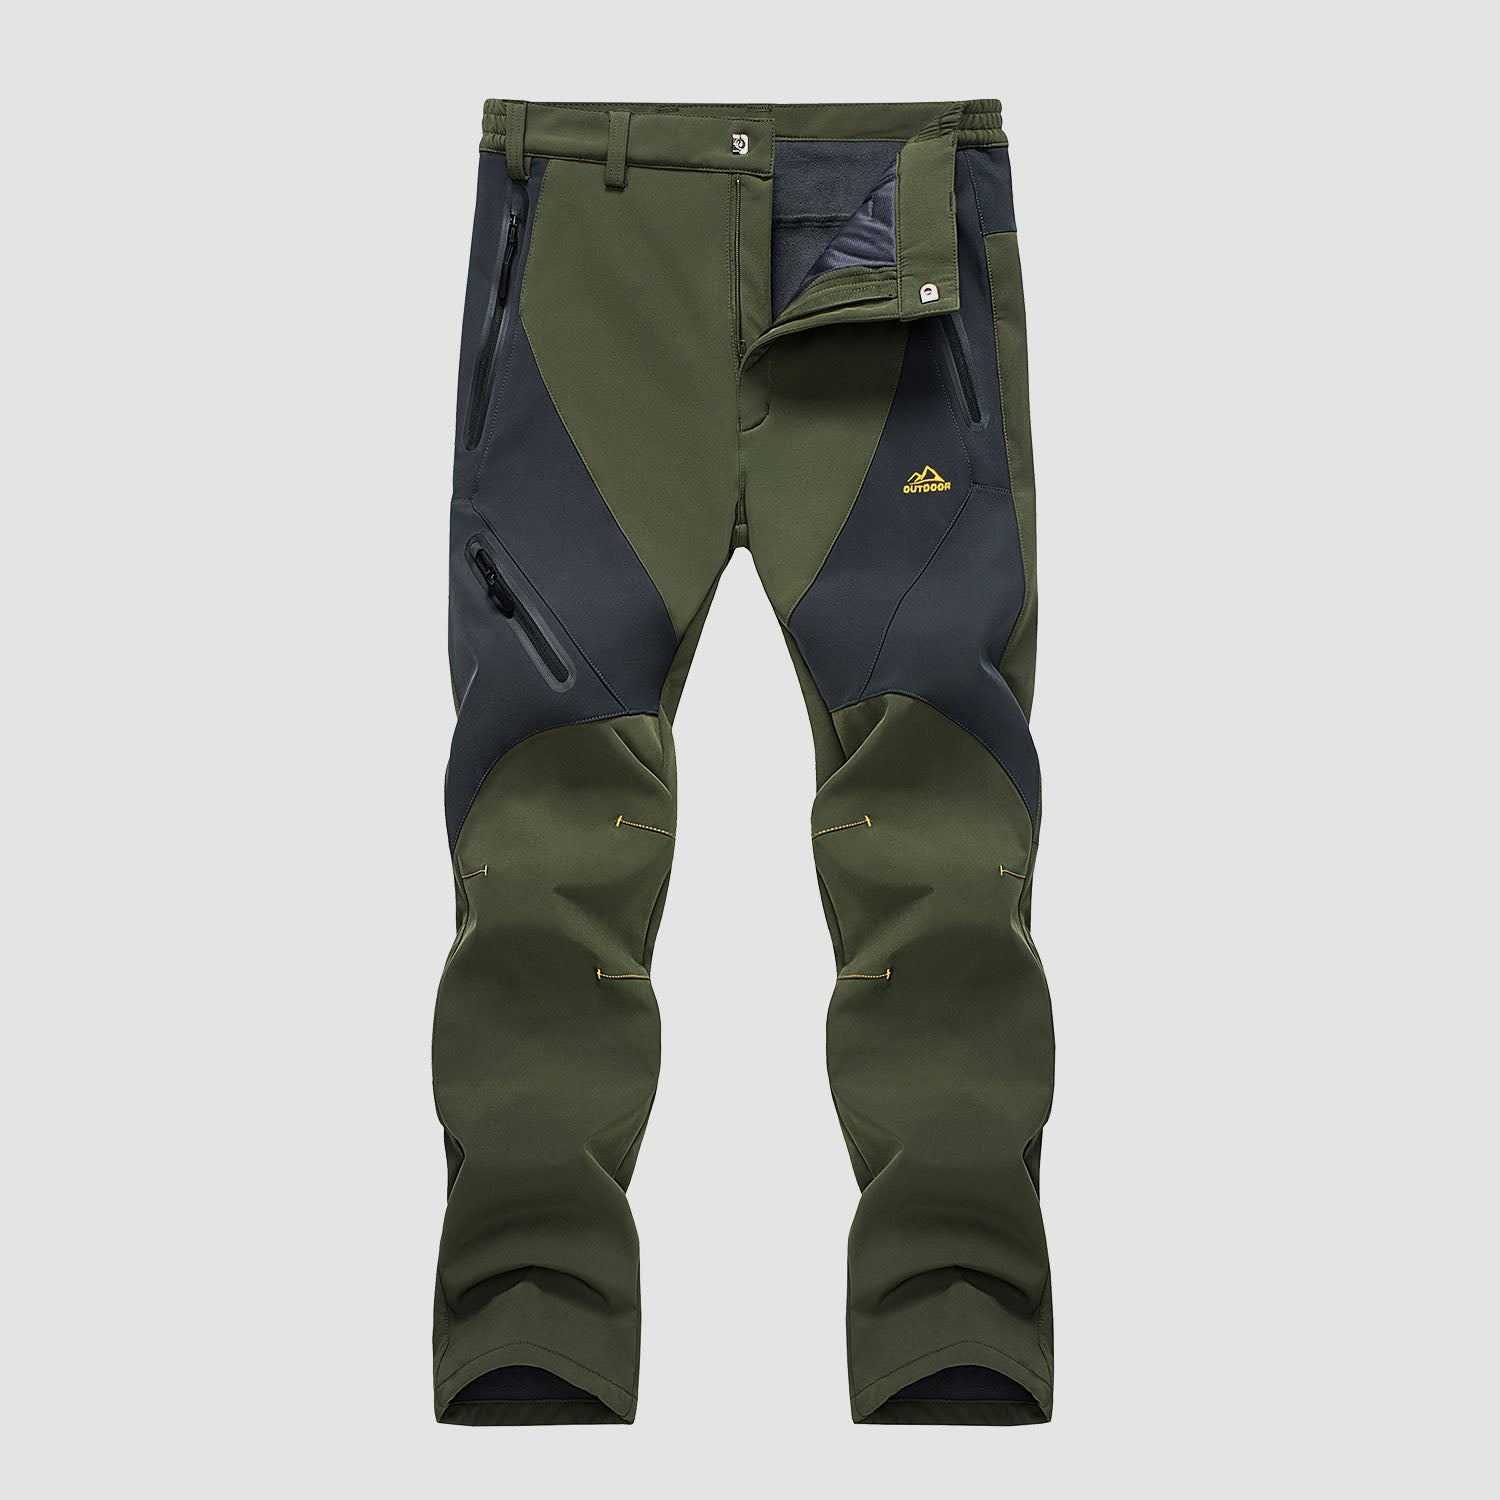 Men's Winter Pants Snow Pants Fleece Lined Water Resistant with 4 Zip Pockets Skiing Pants